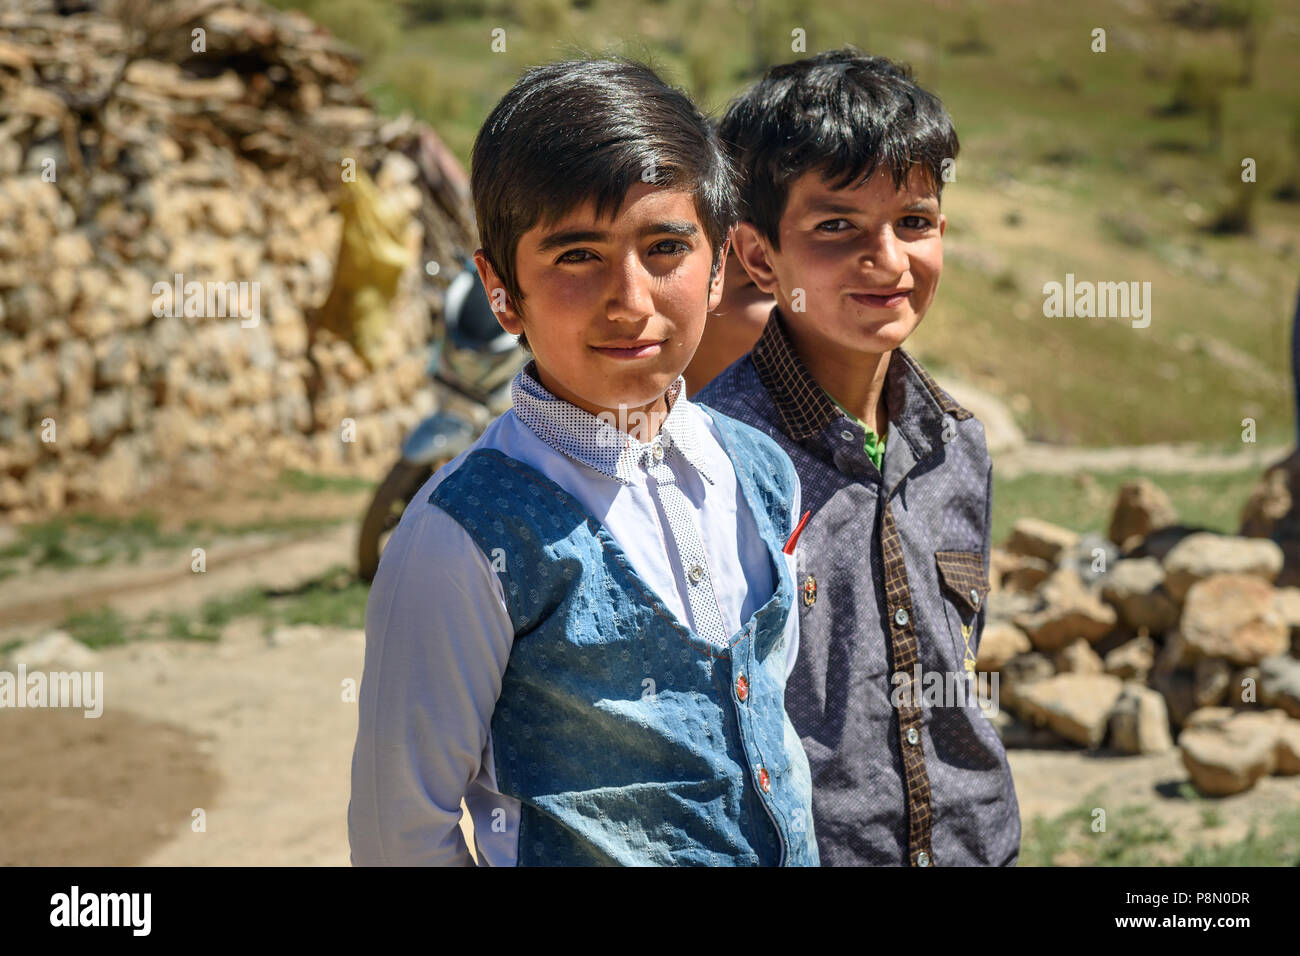 La province du Lorestan, Iran - avril 1, 2018 Iran : les jeunes garçons lors de la cérémonie du mariage dans le village. Banque D'Images